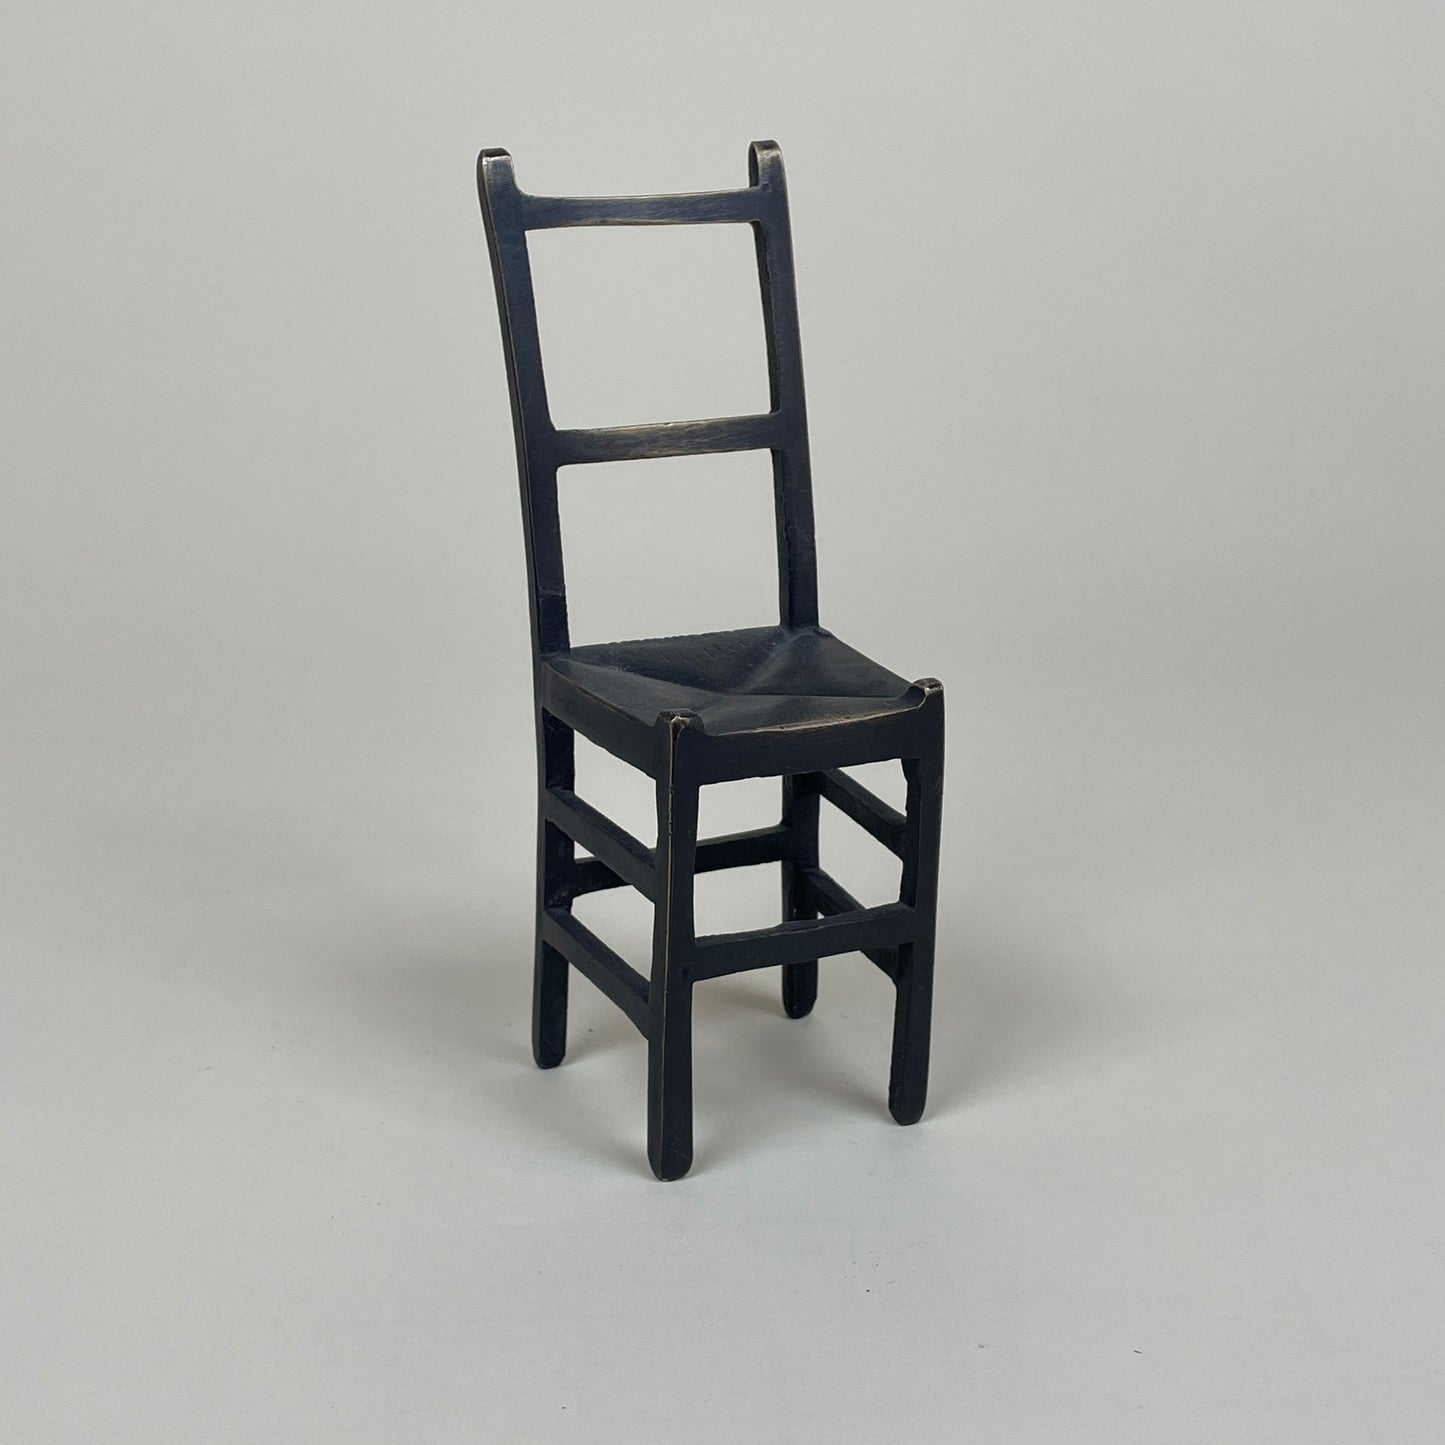 Vintage miniature metal chair